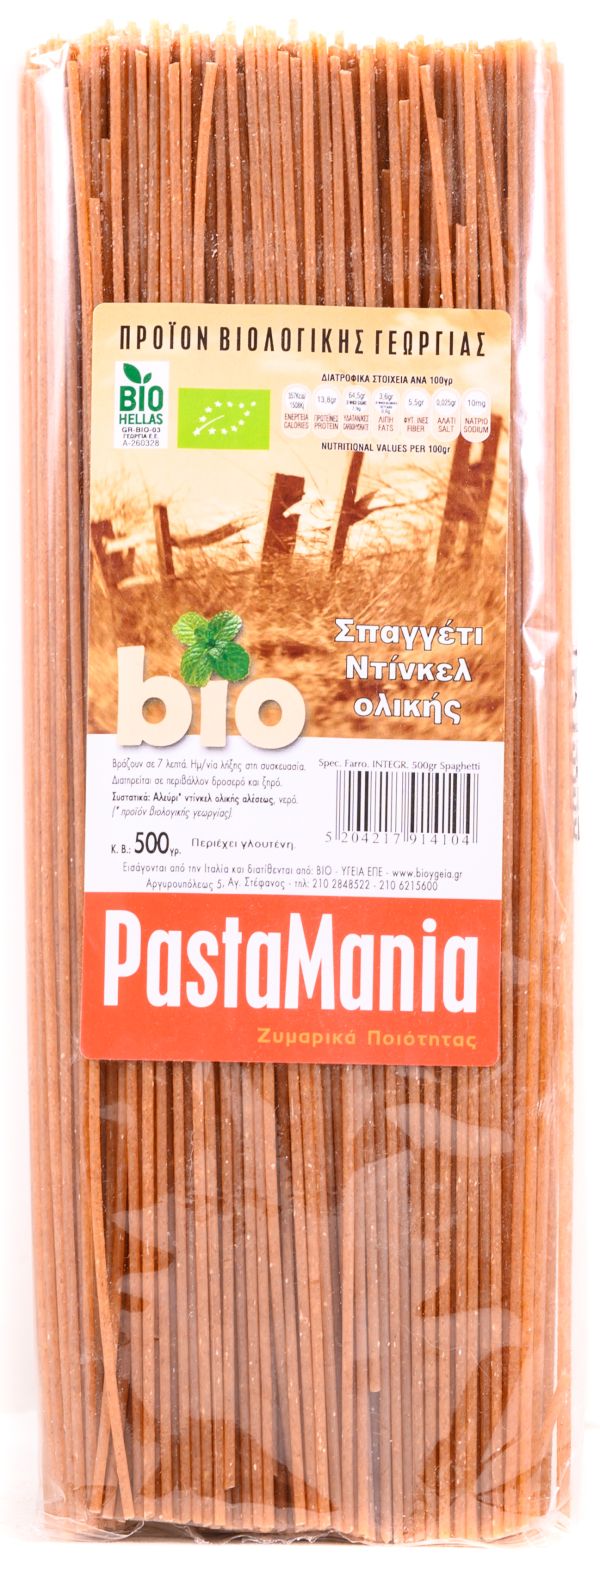 Σπαγγέτι ντίνκελ ολικής Pastamania (χαμηλό σε γλουτένη)